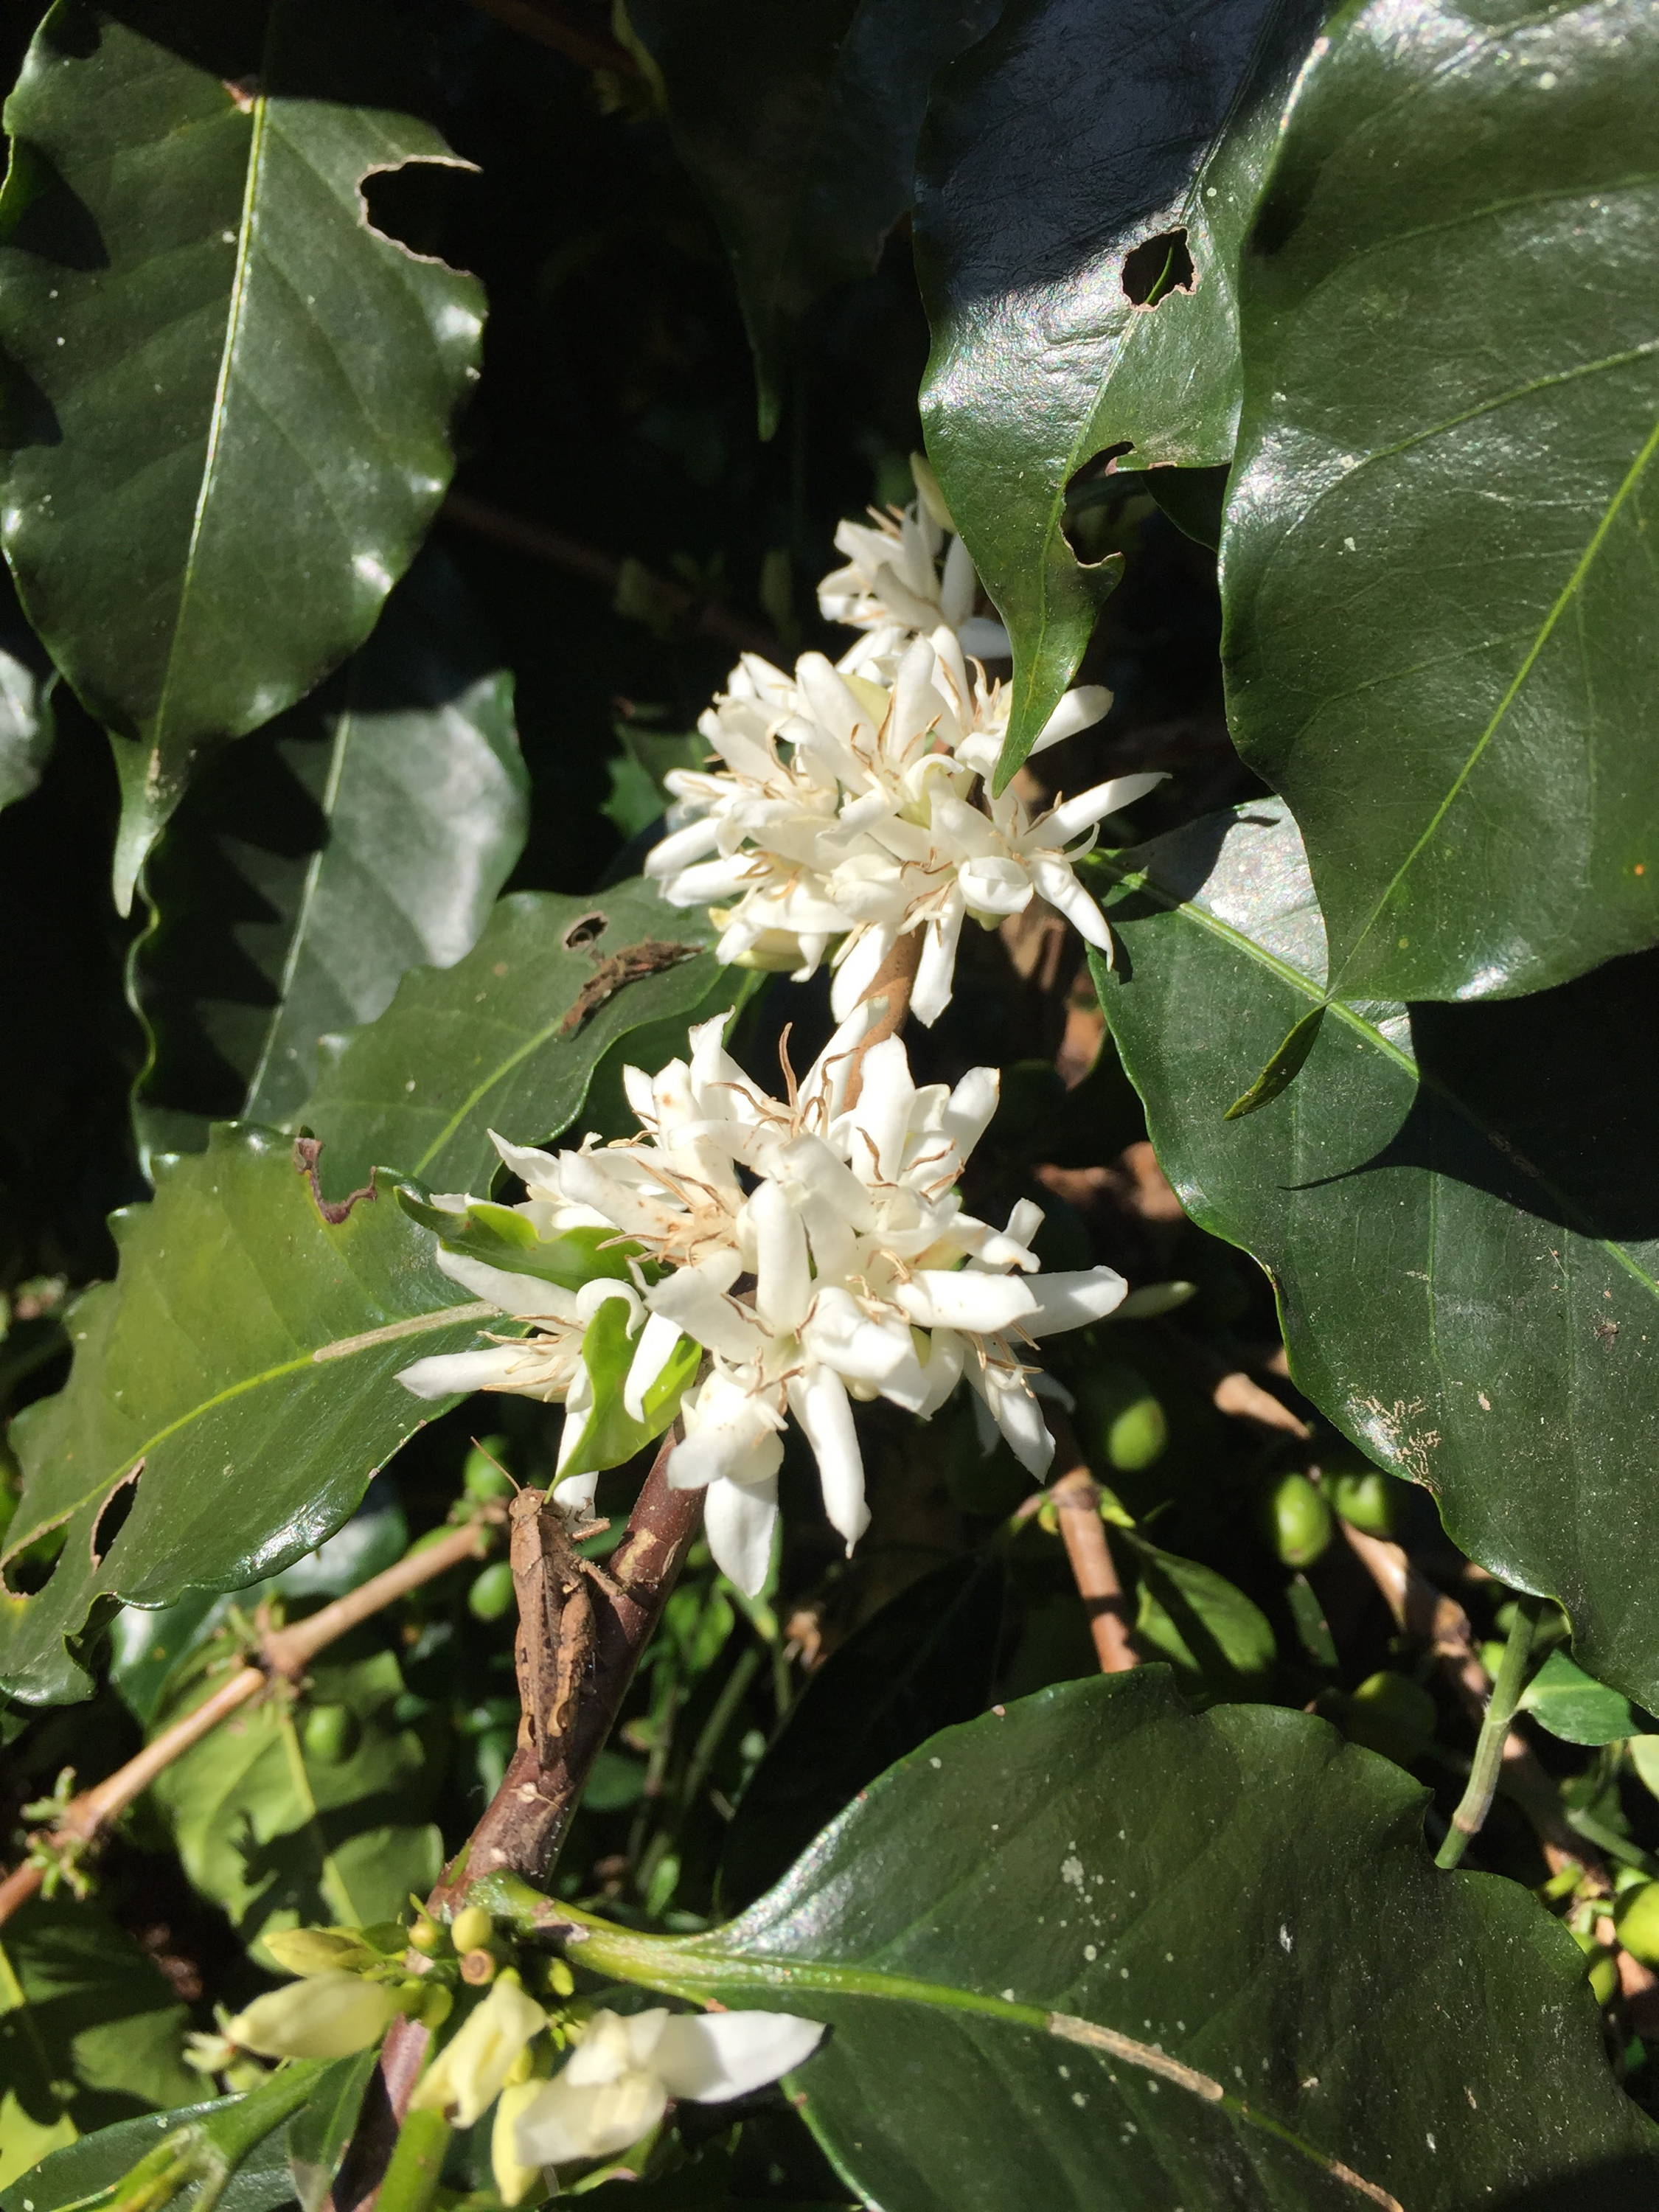 Ein Kaffeebaum blüht oft, während er Früchte trägt. Sie können die neuen grünen Früchte im Hintergrund an anderen Zweigen des blühenden Baumes sehen.